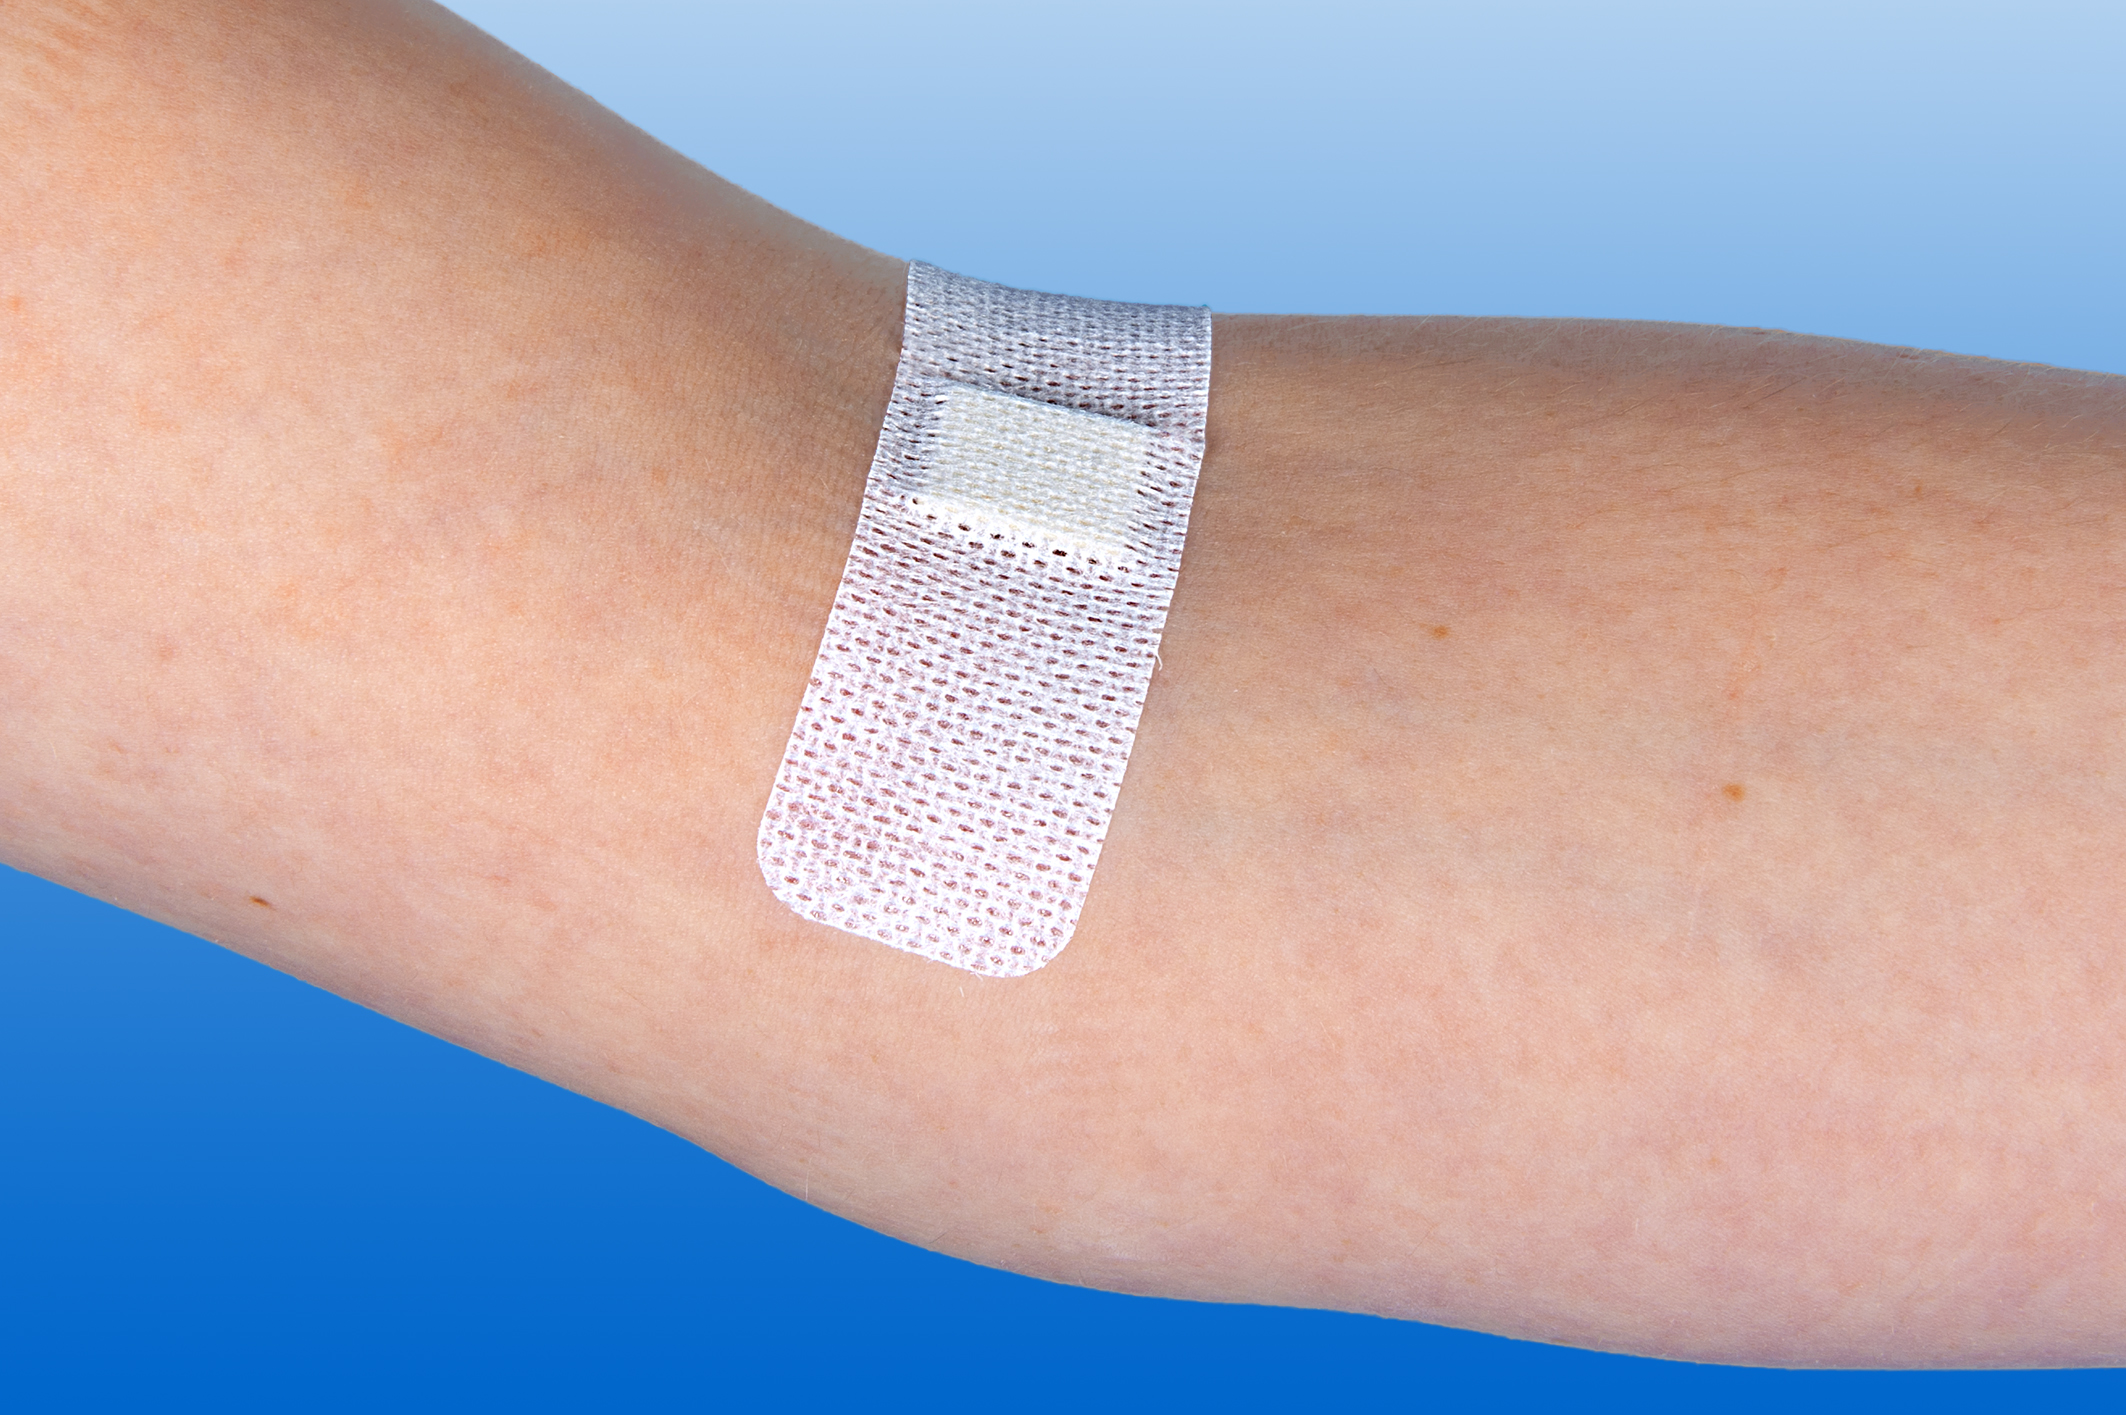 Dialysepflaster Rudablock® 25 mm x 85 mm transparent (Schachtel mit 100 Pflastern)